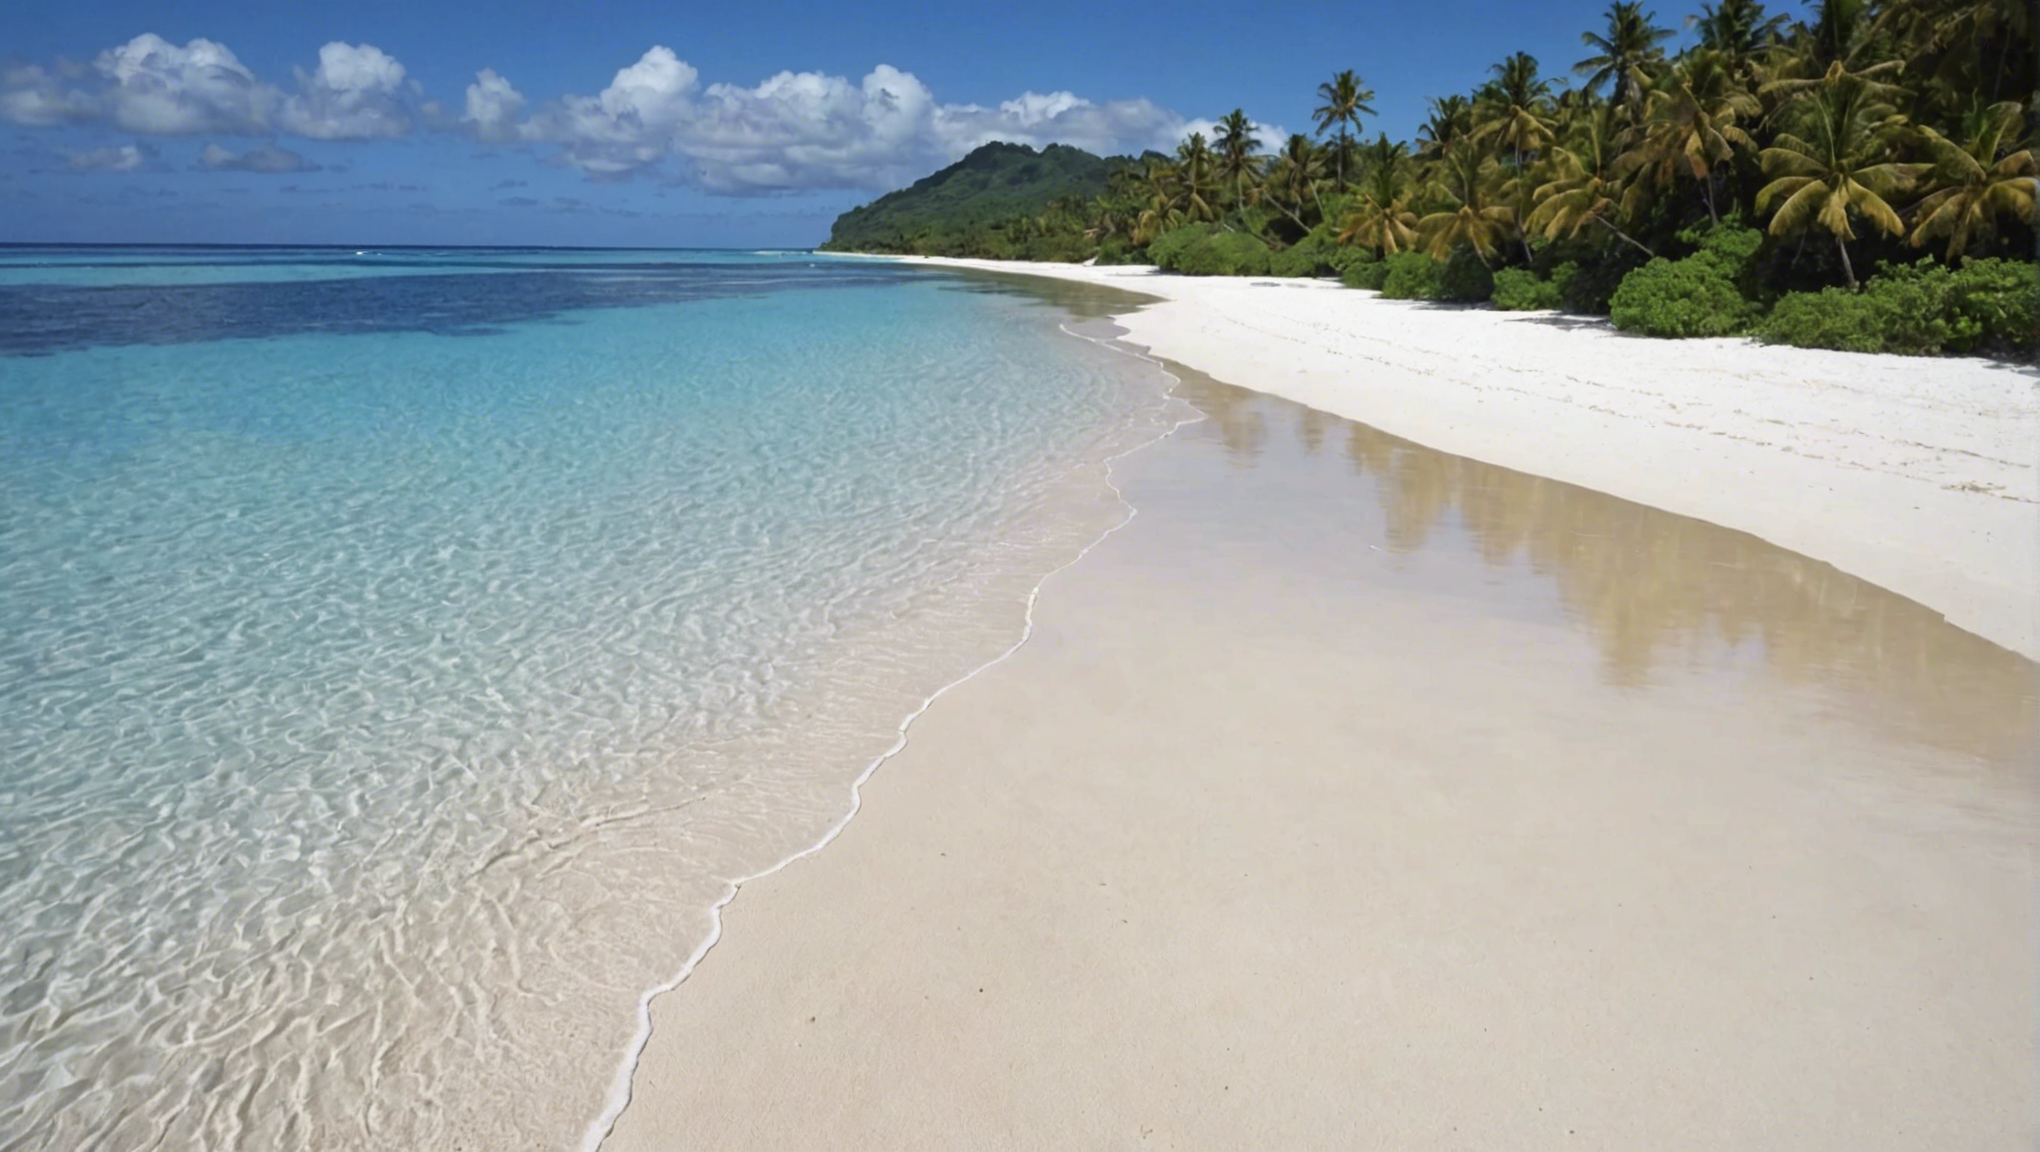 découvrez les plages de sable blanc paradisiaques de tahiti, l'endroit idéal pour se détendre et profiter du farniente sous le soleil tropical.